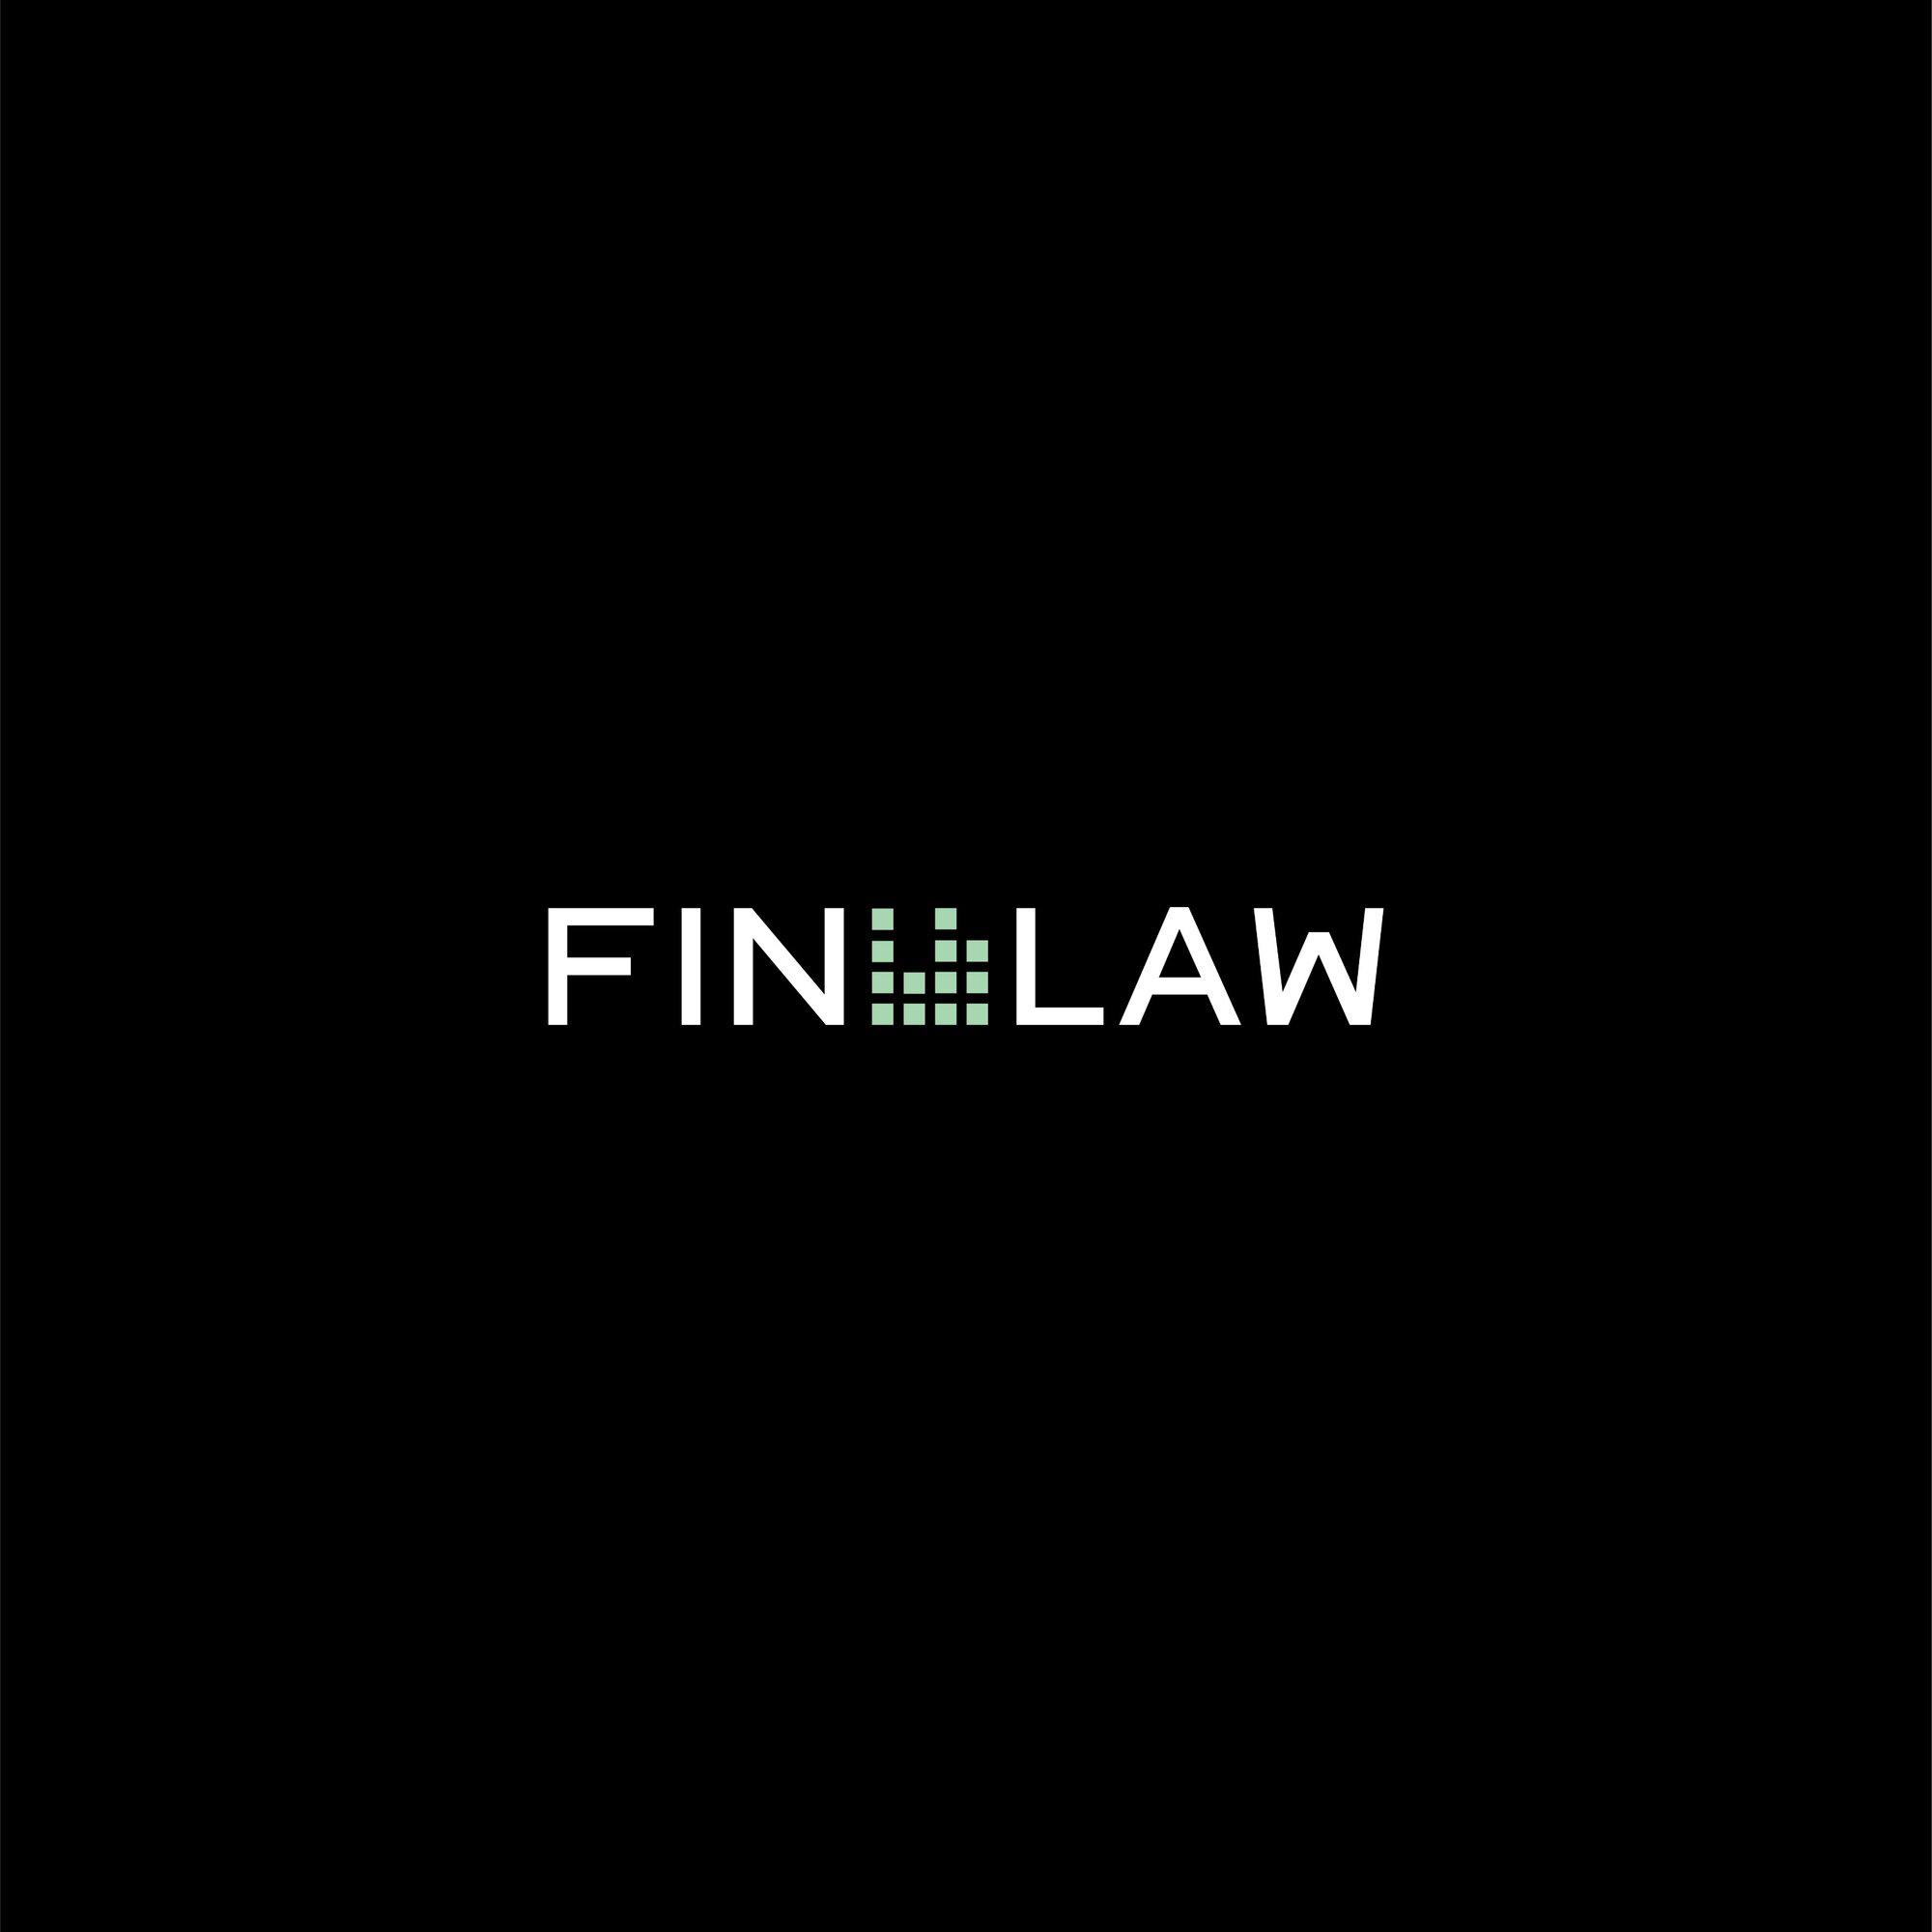 Kundenbild groß 5 FIN LAW - Legal Financial Advisory